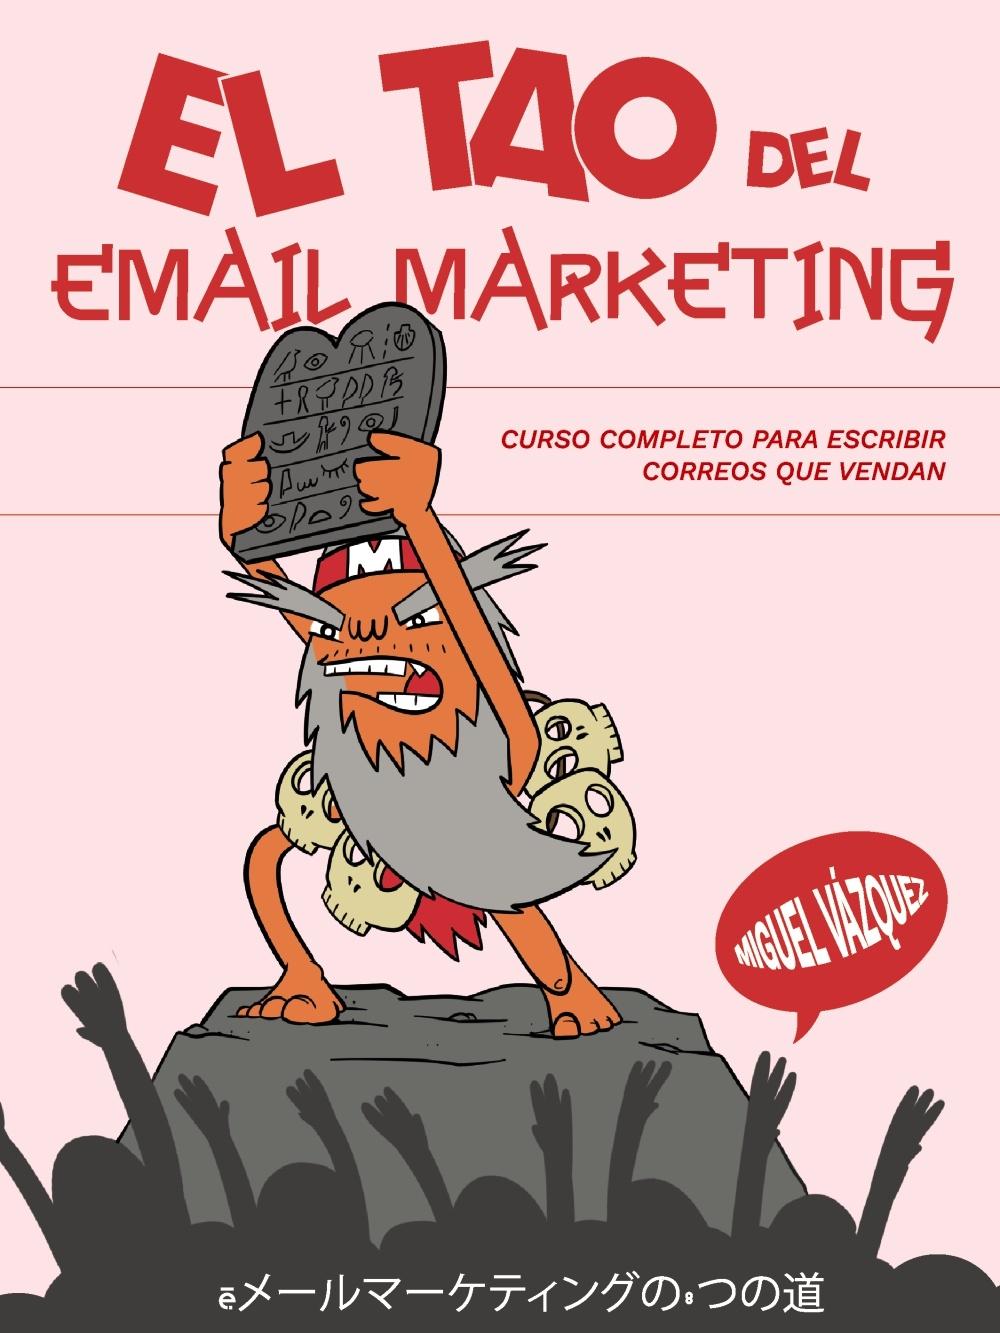 El tao del email marketing "Curso completo para escribir correos que vendan". 